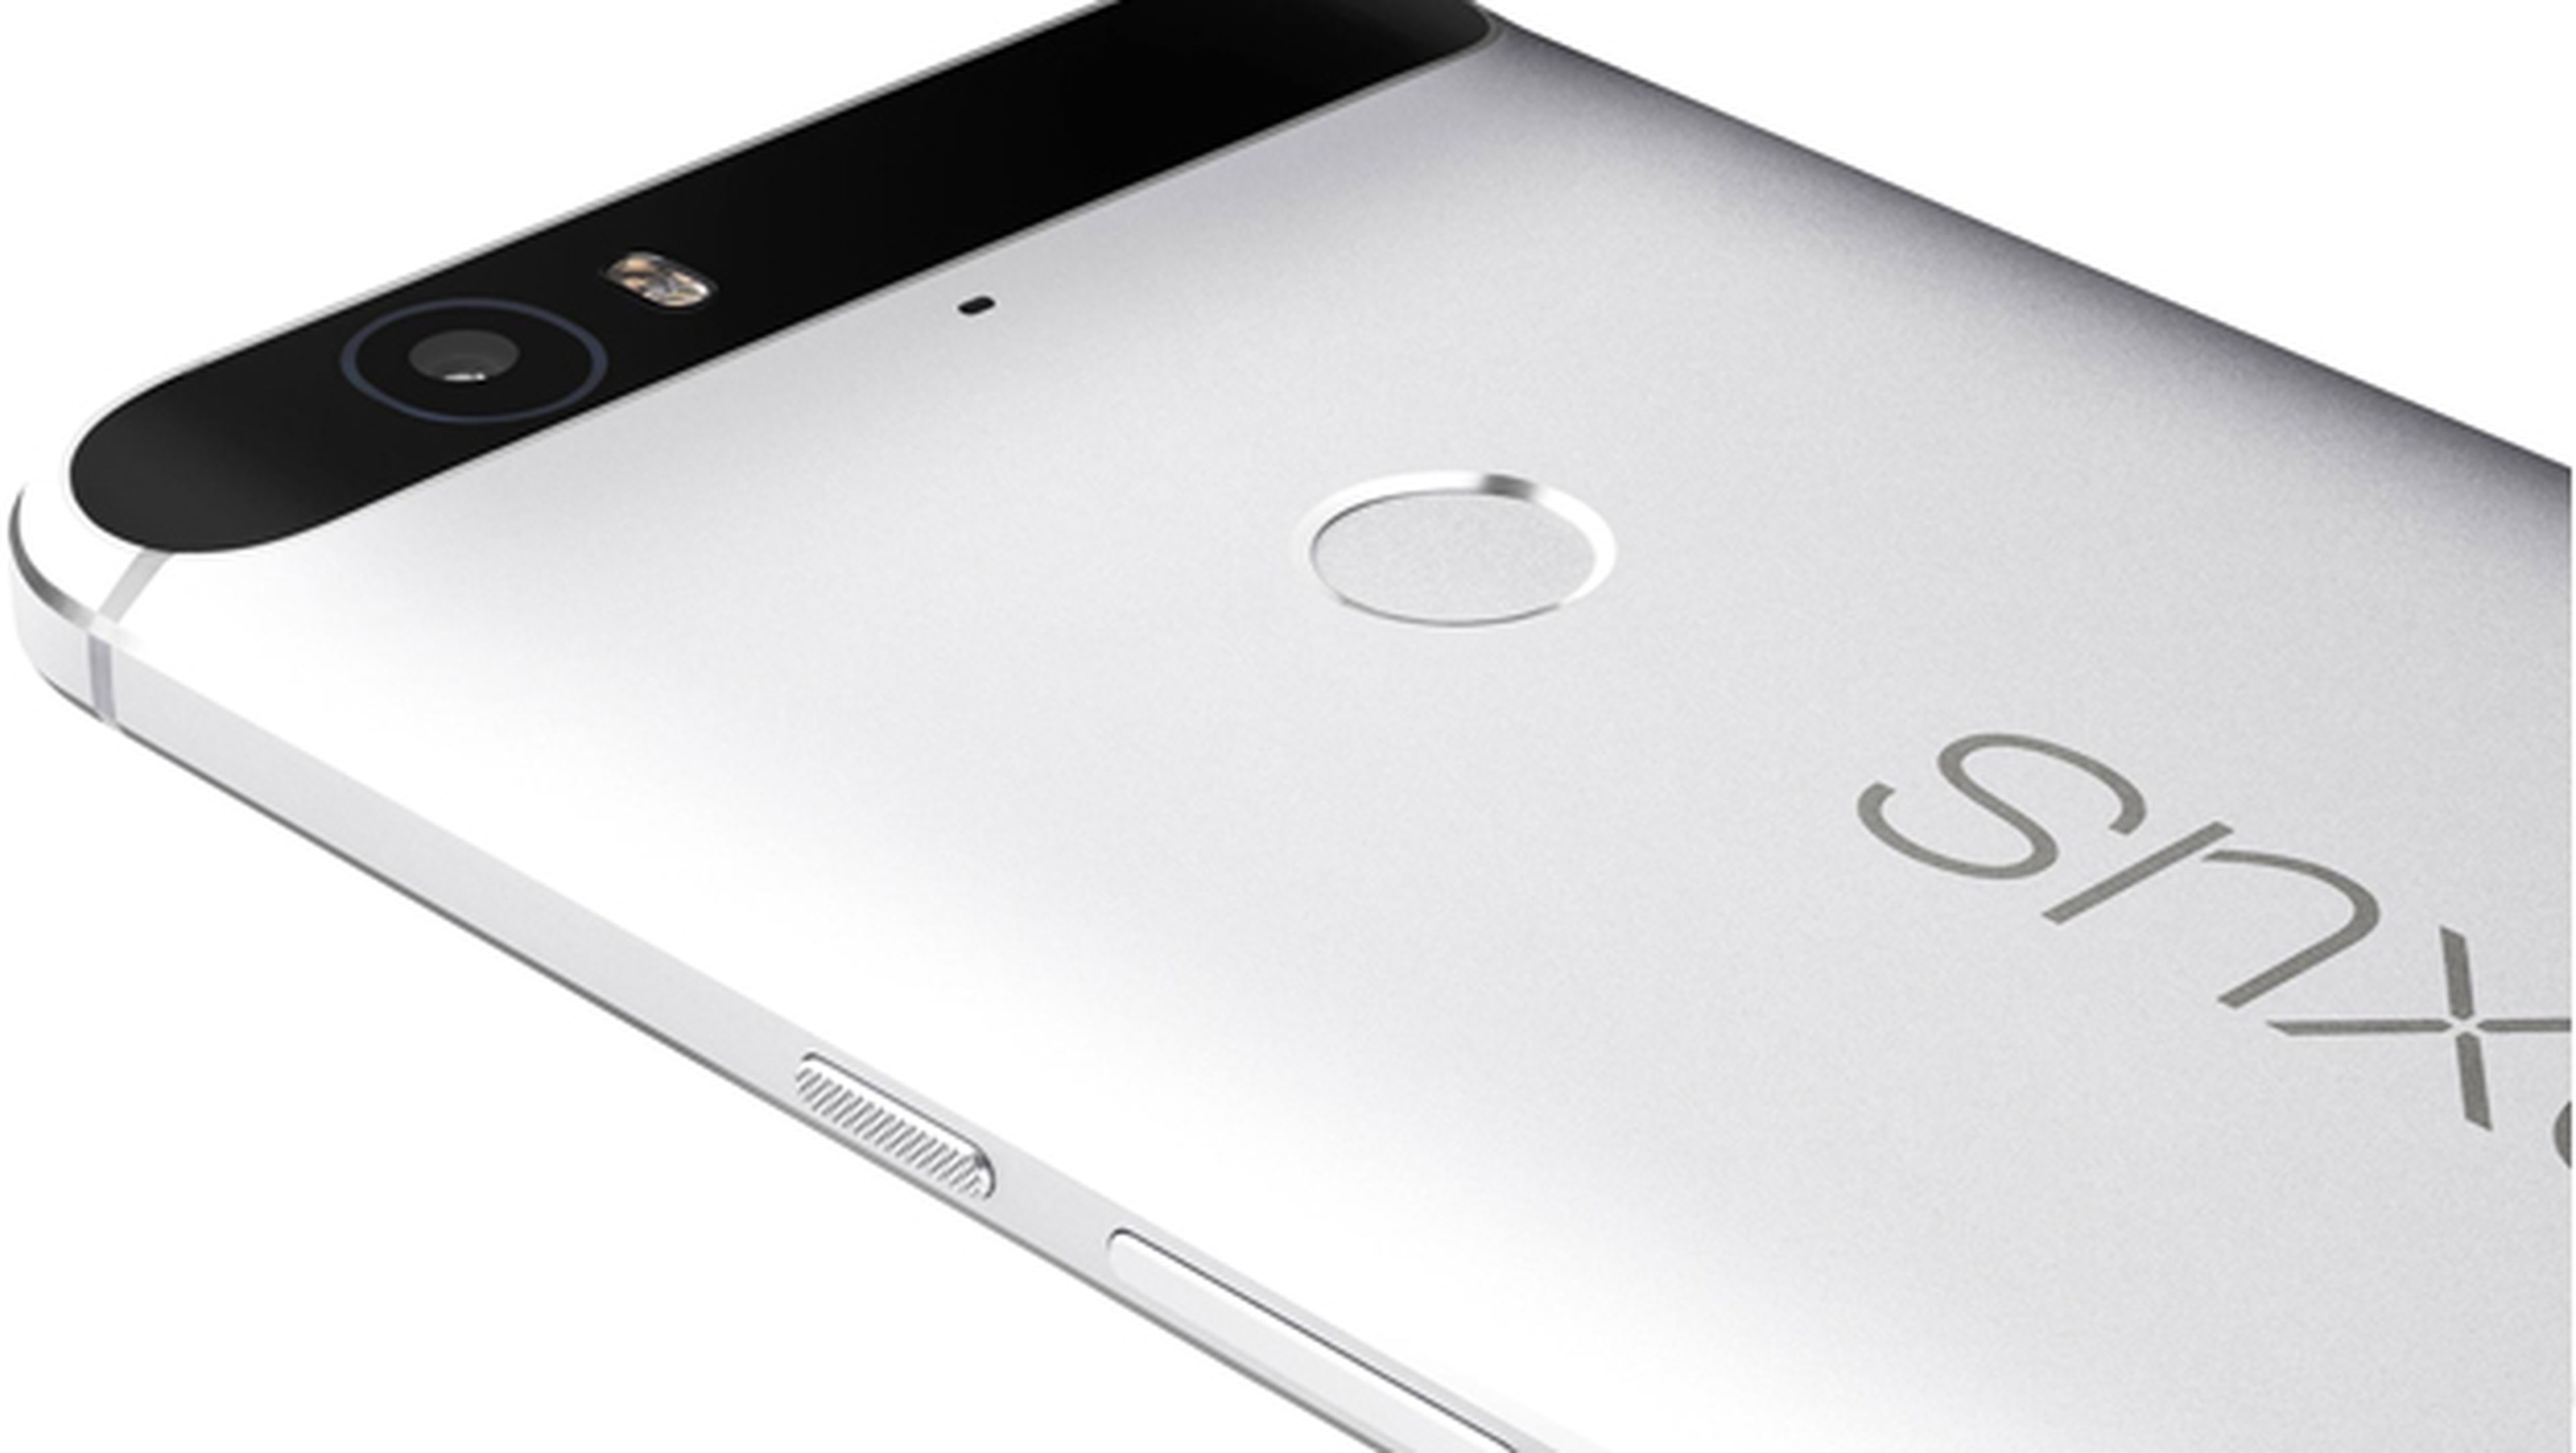 Nexus 6P entre las mejores cámaras del mercado, según DxOMark